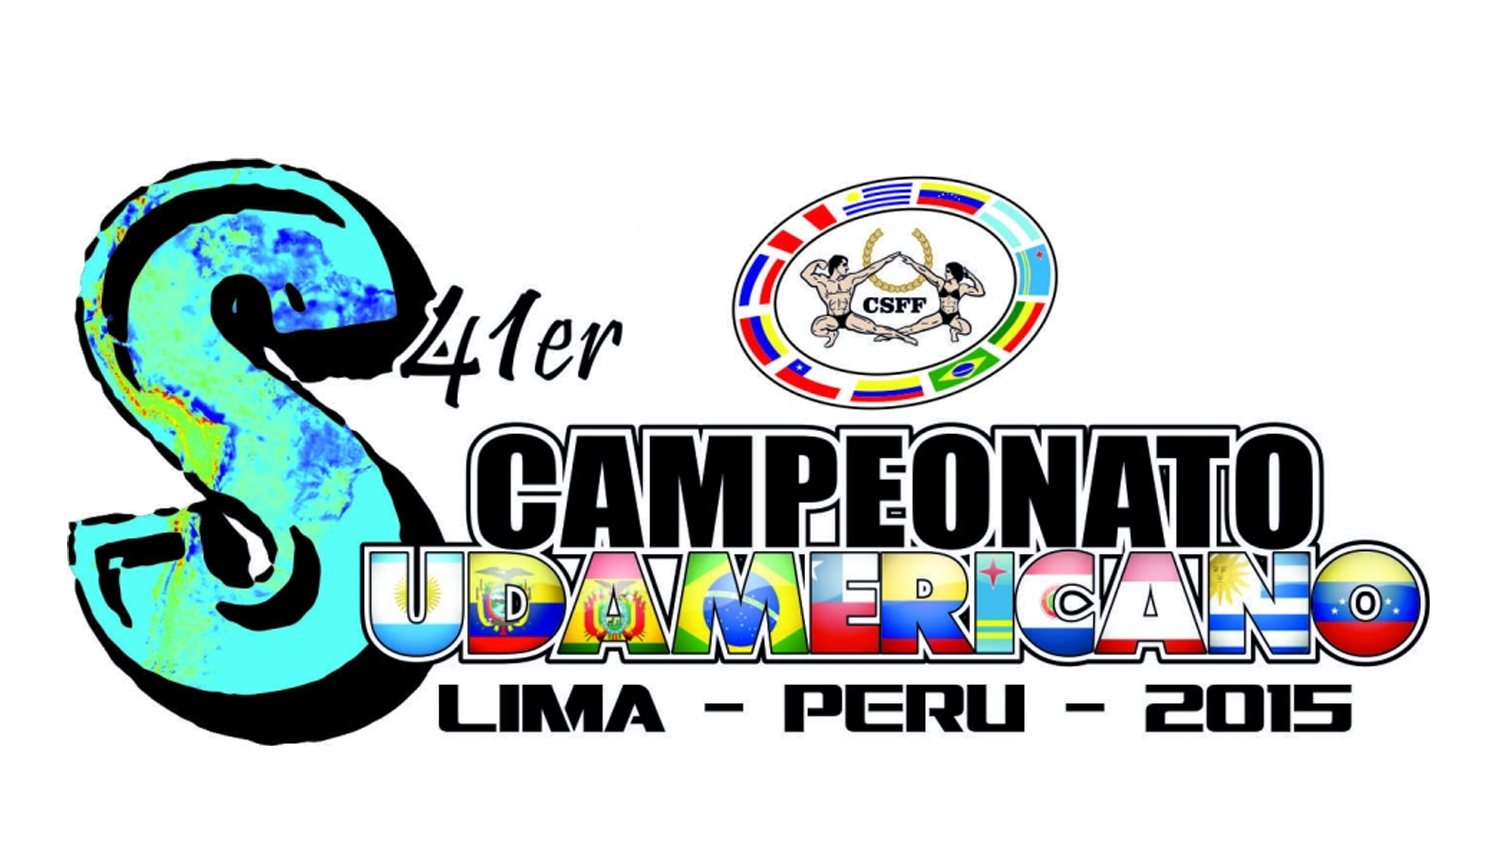 Invitación al 41er Campeonato Sudamericano de Fisico Culturismo y Fitness 2015 Lima – Peru